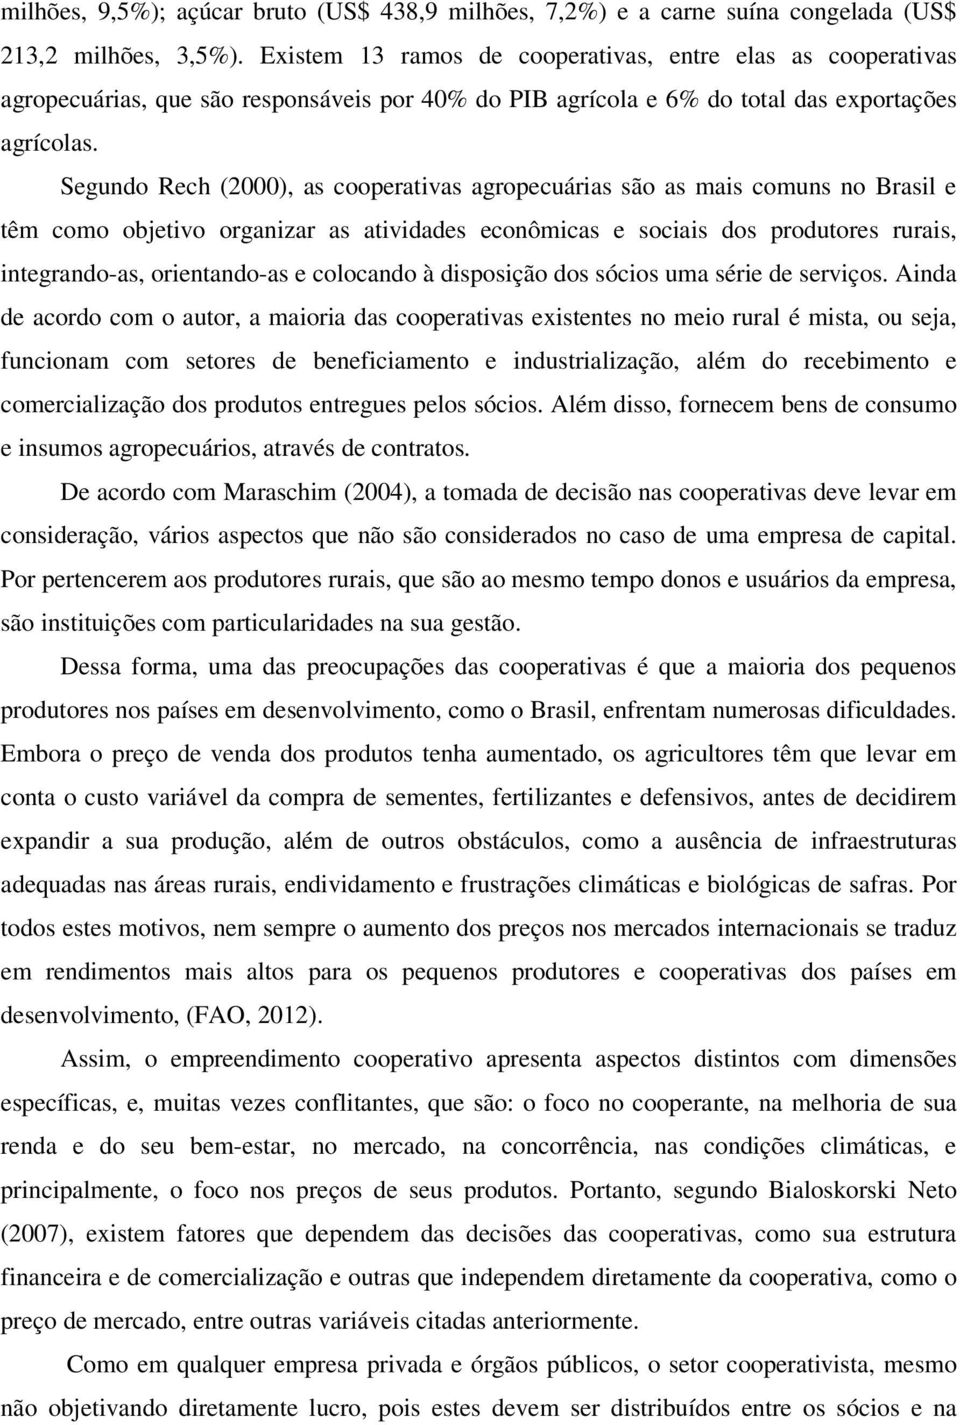 Segundo Rech (2000), as cooperativas agropecuárias são as mais comuns no Brasil e têm como objetivo organizar as atividades econômicas e sociais dos produtores rurais, integrando-as, orientando-as e